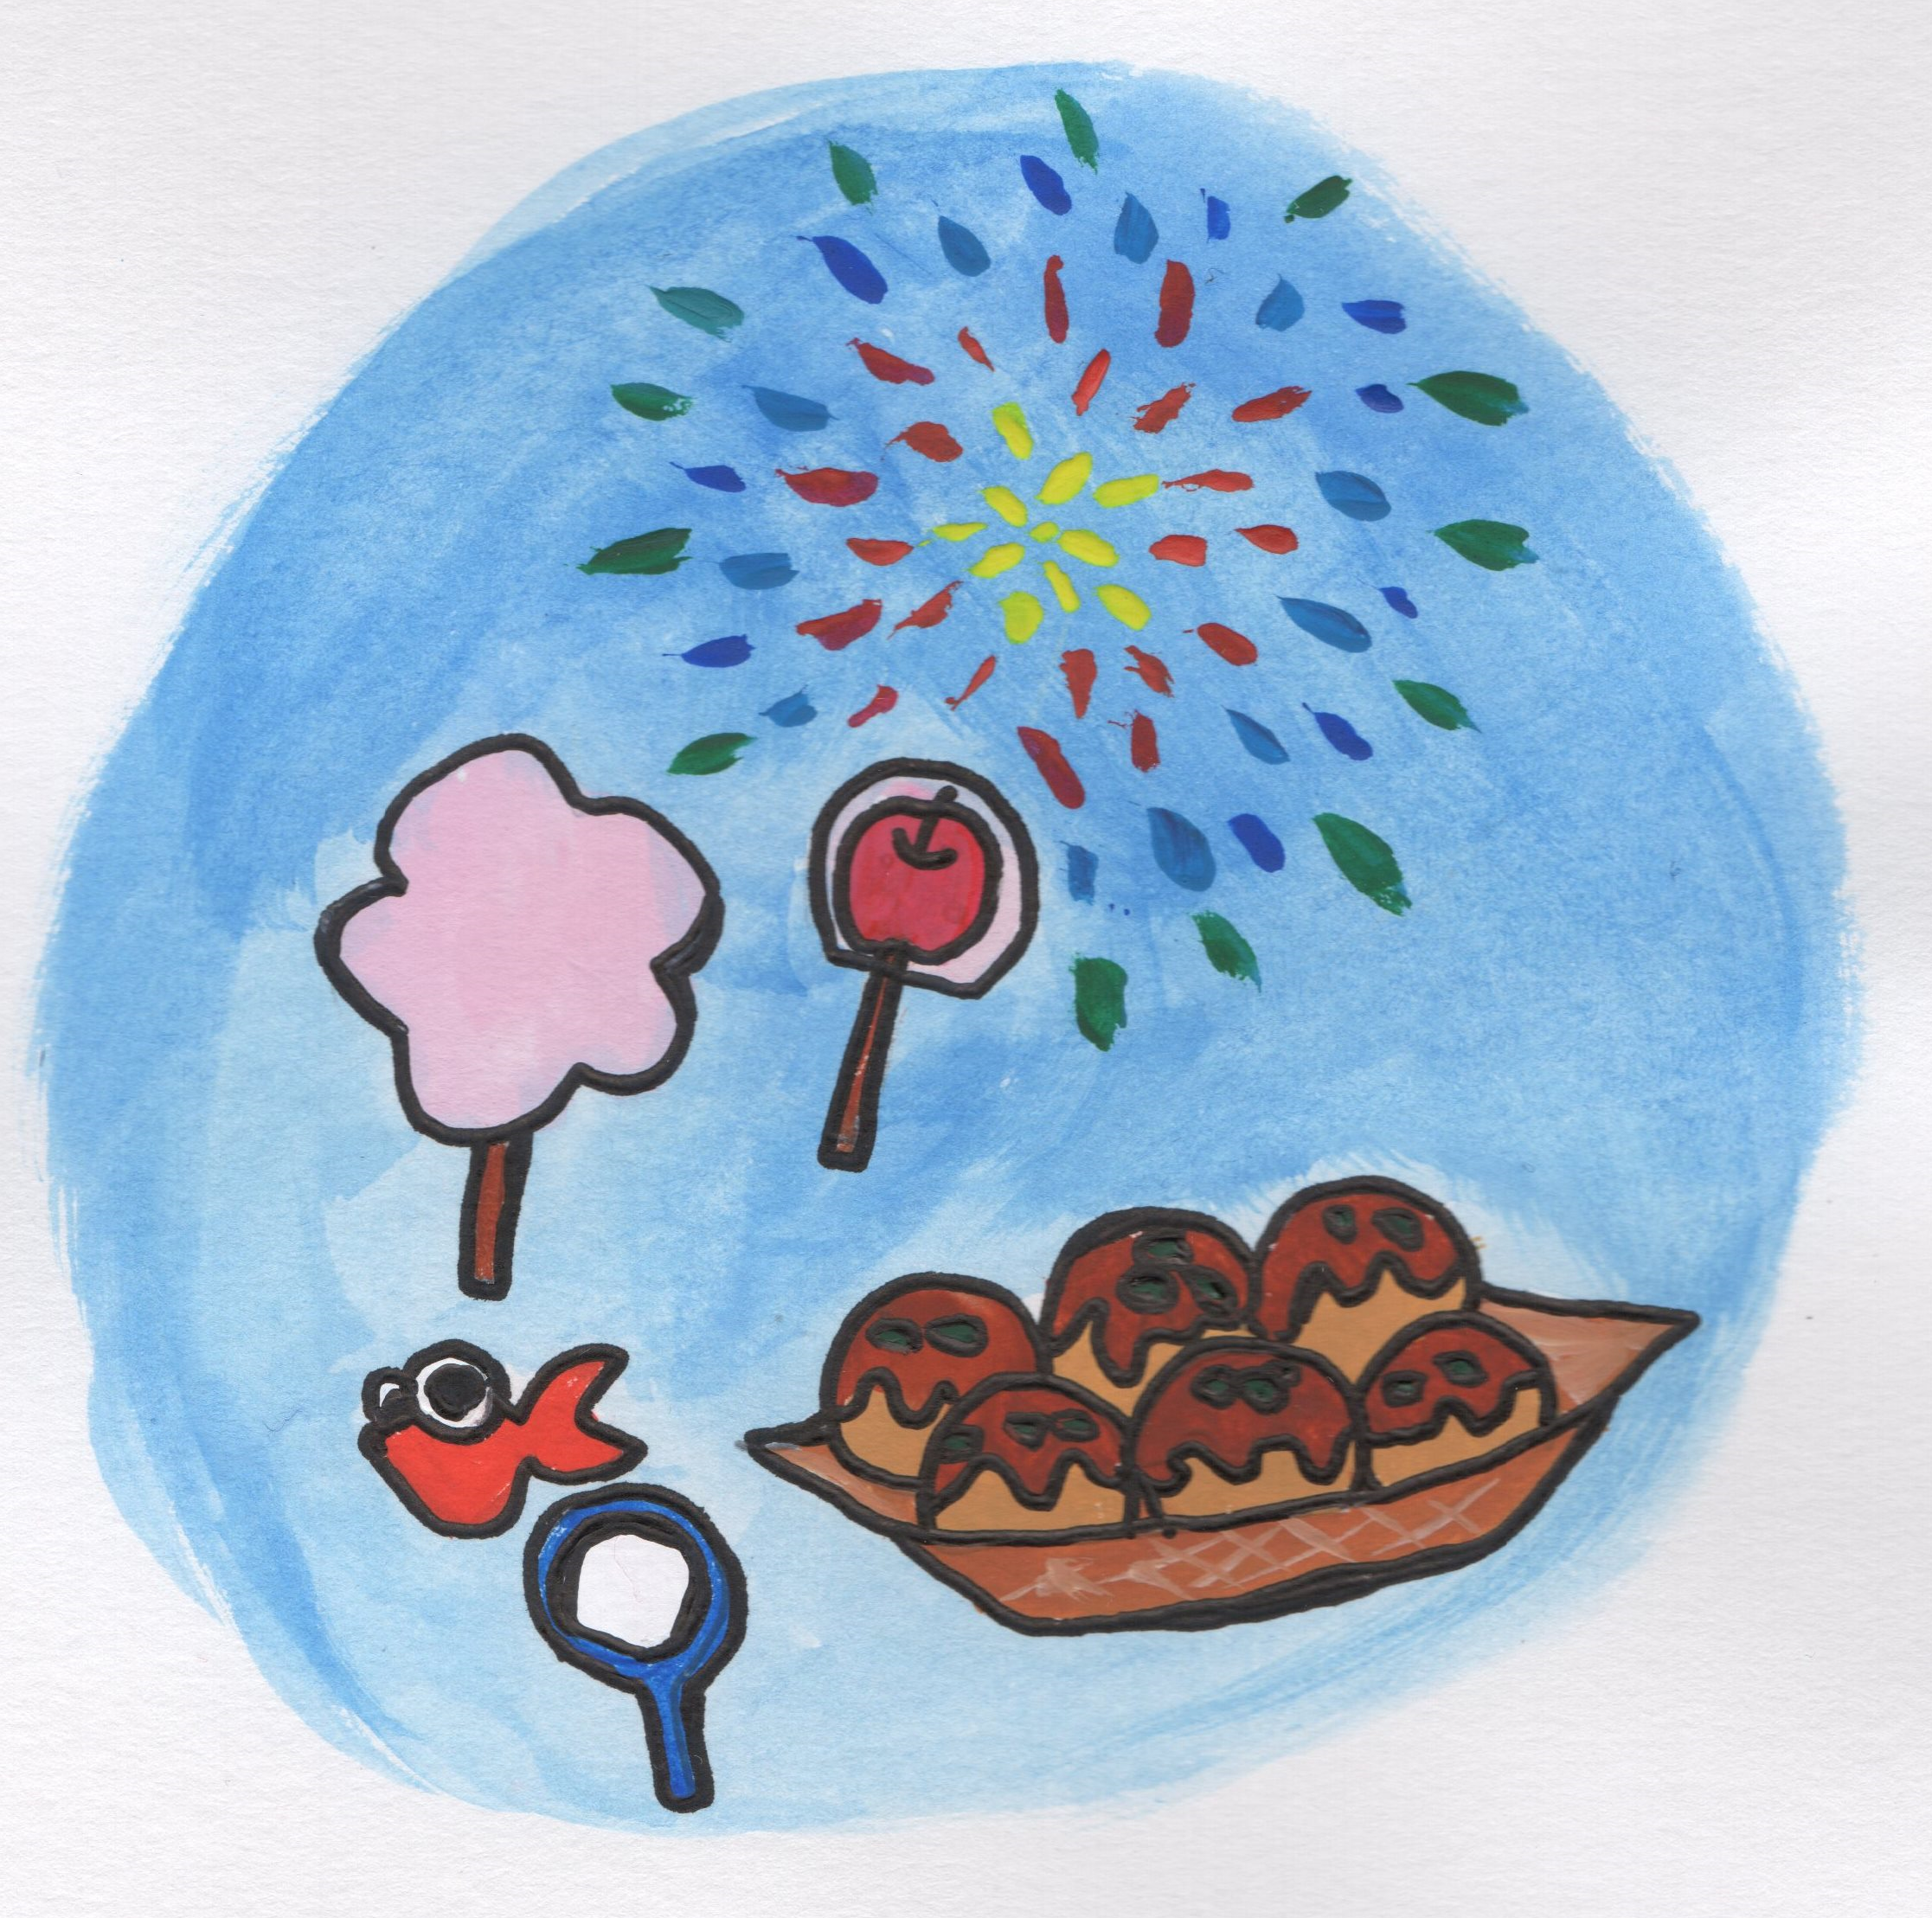 お祭り 花火 綿菓子 たこ焼き りんご飴 金魚すくい のイラスト 手書きの無料イラストとフリー素材屋byまい